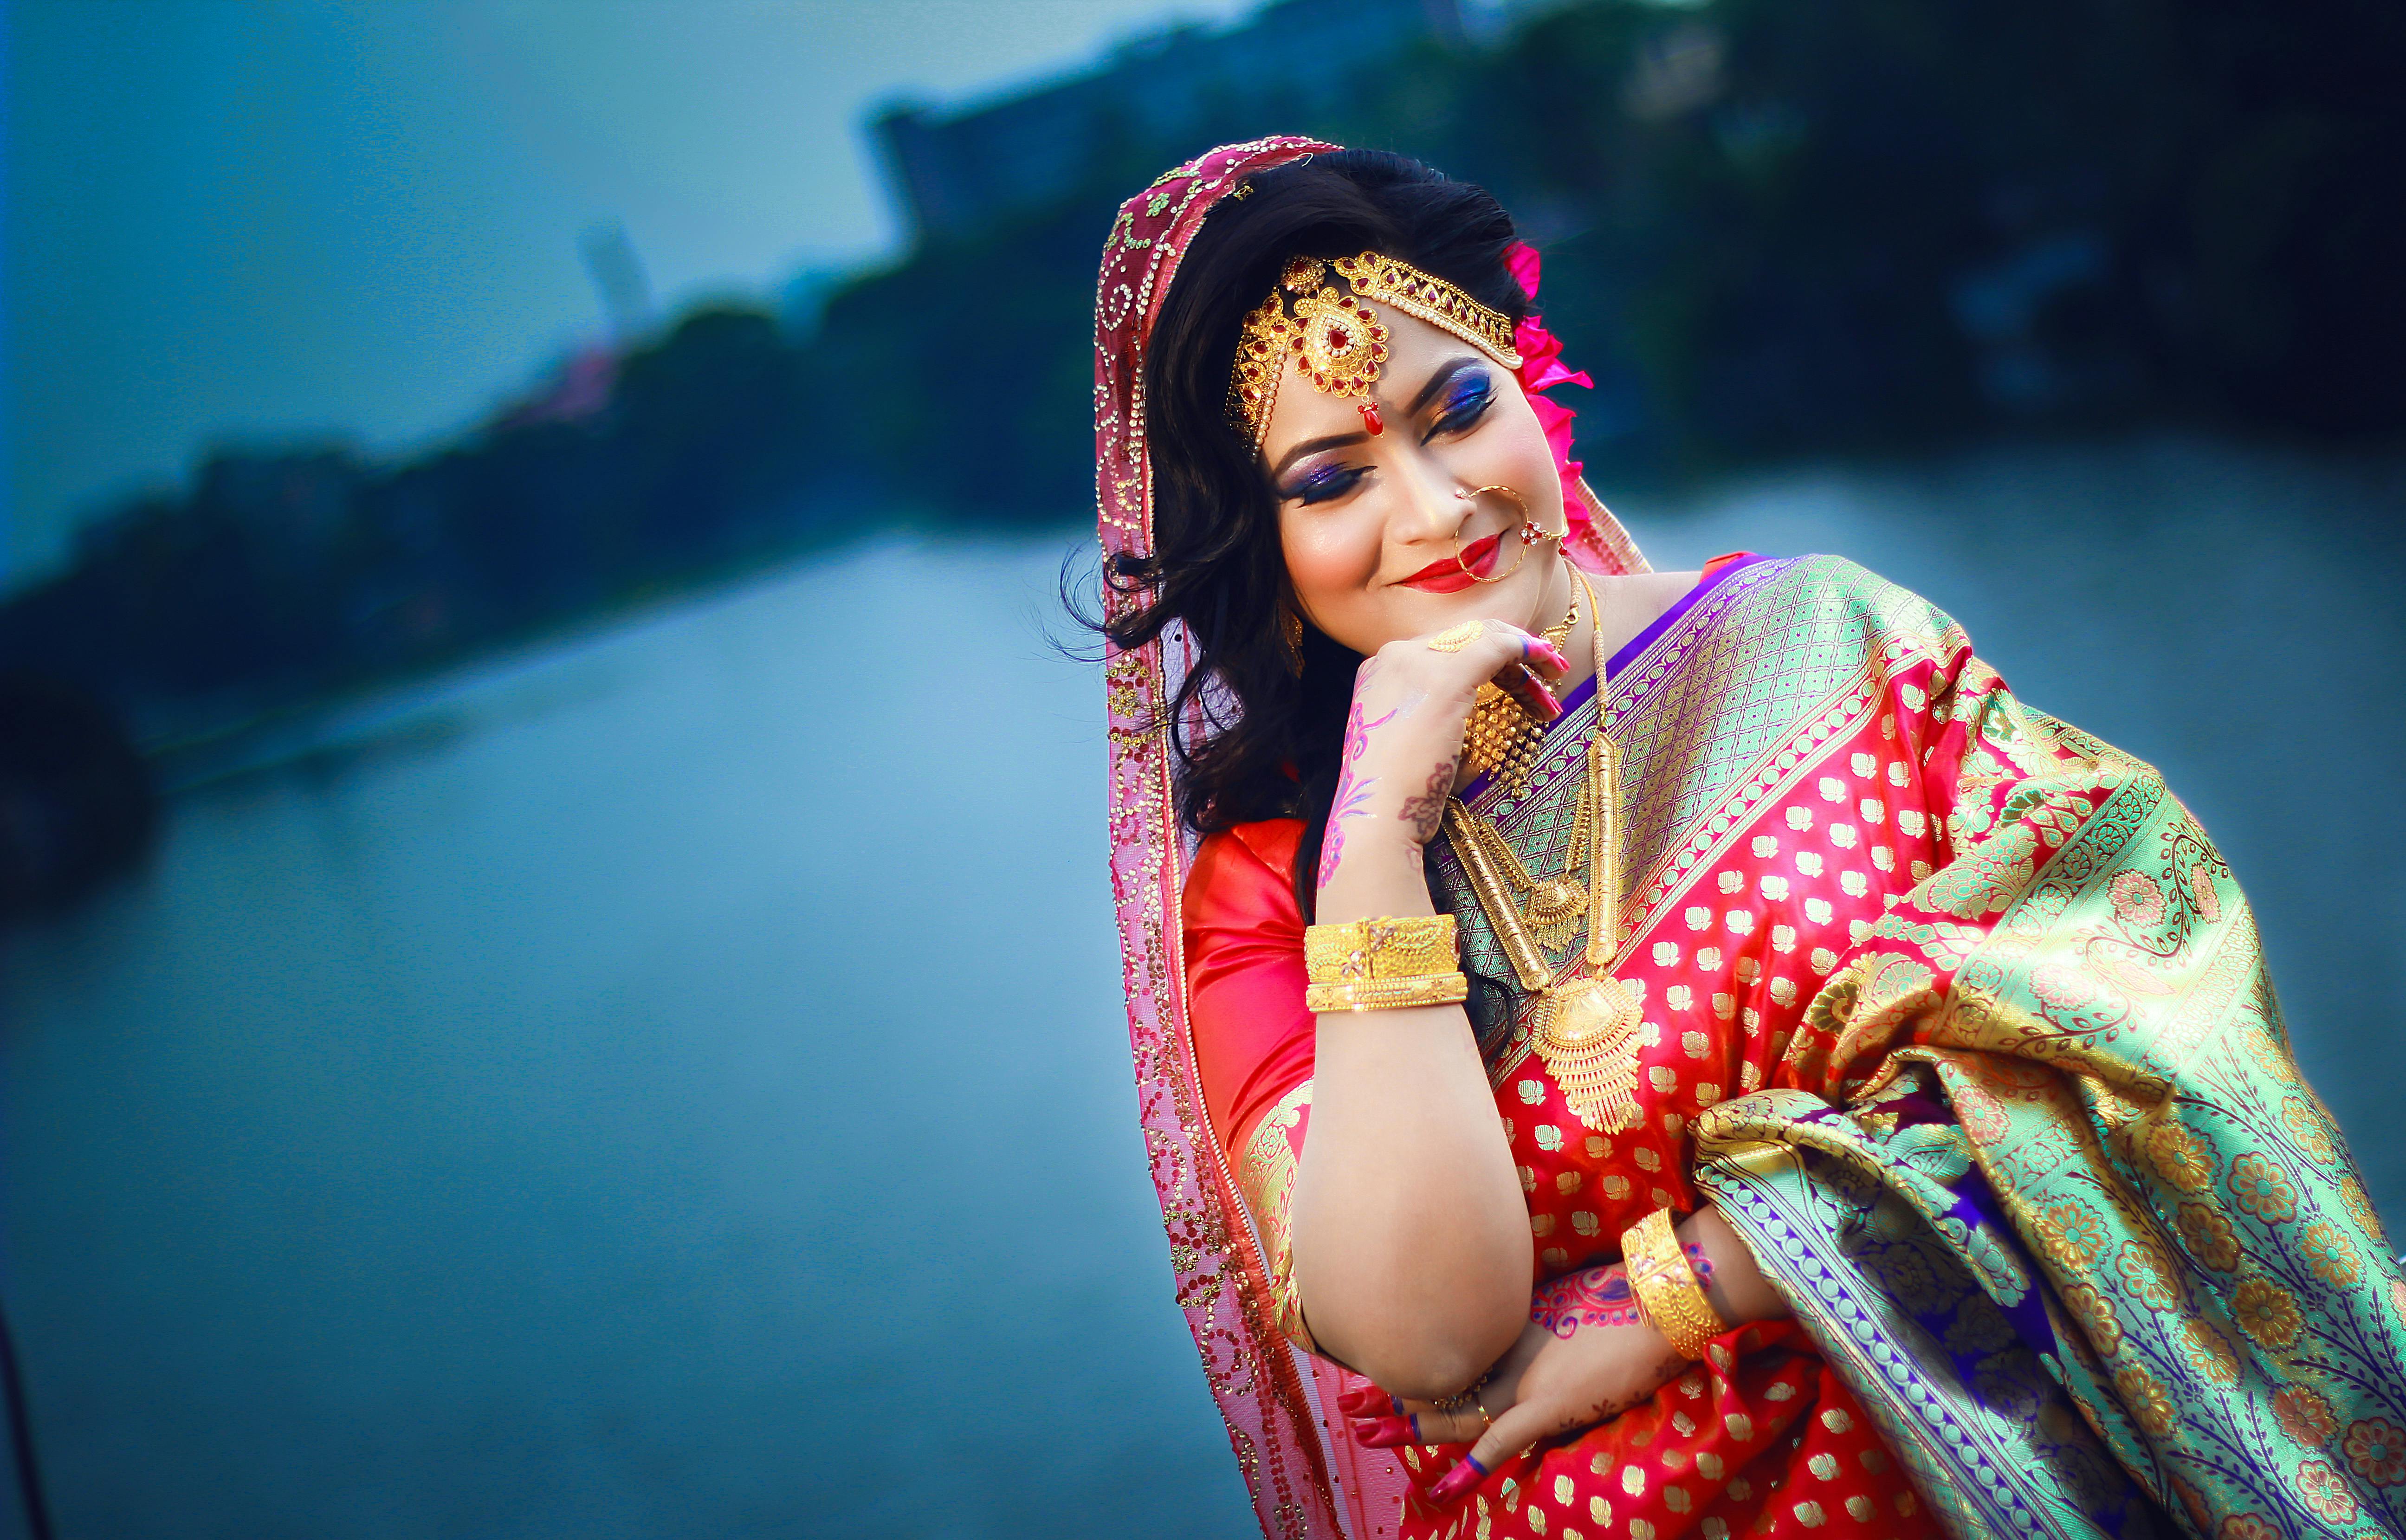 Bridal Photoshoot Poses Bengali 2020 || Bridal Pose Ideas 2020 || - YouTube